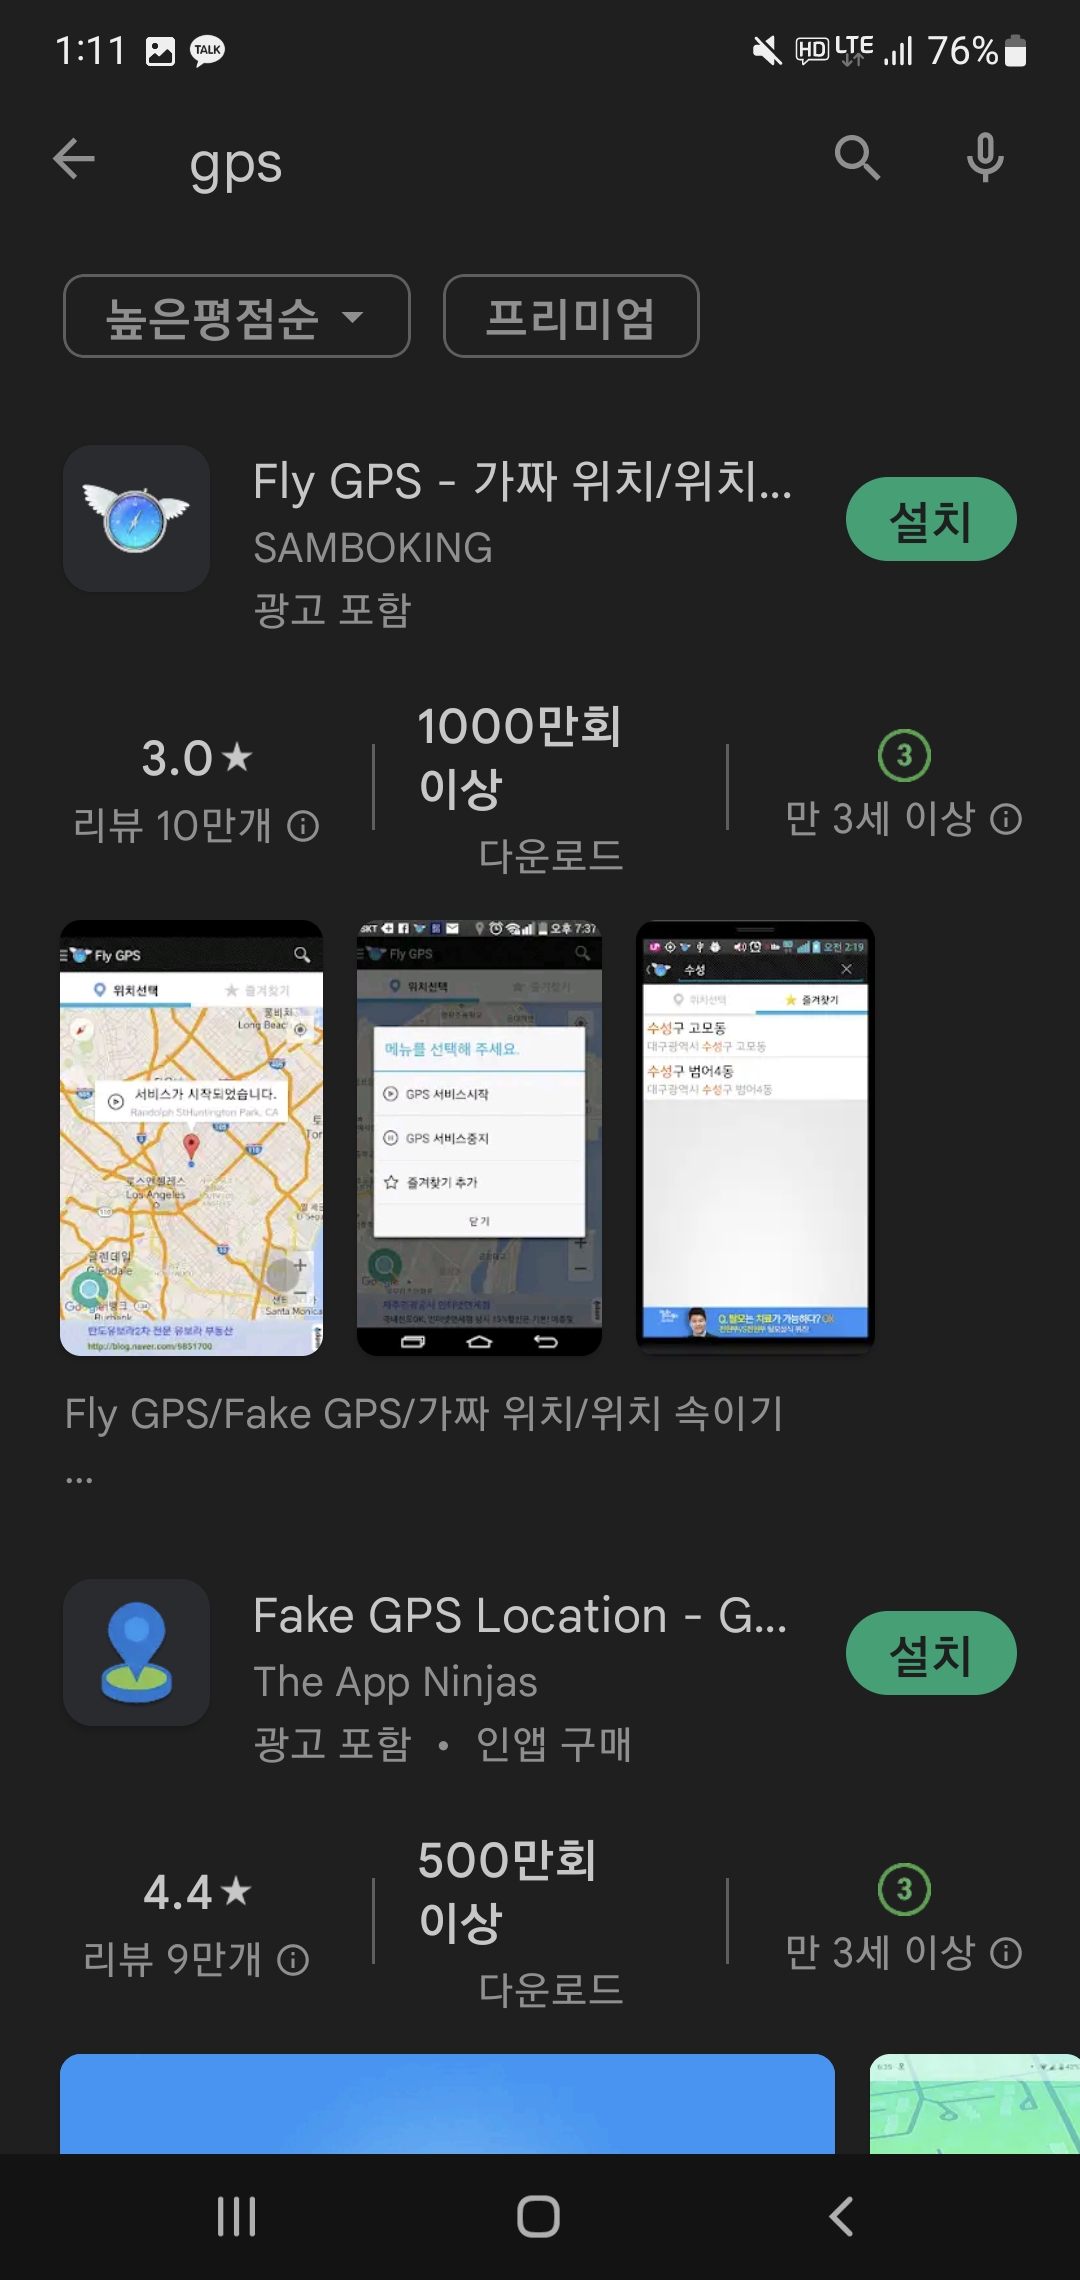  GPS 위치 조작 앱 리스트